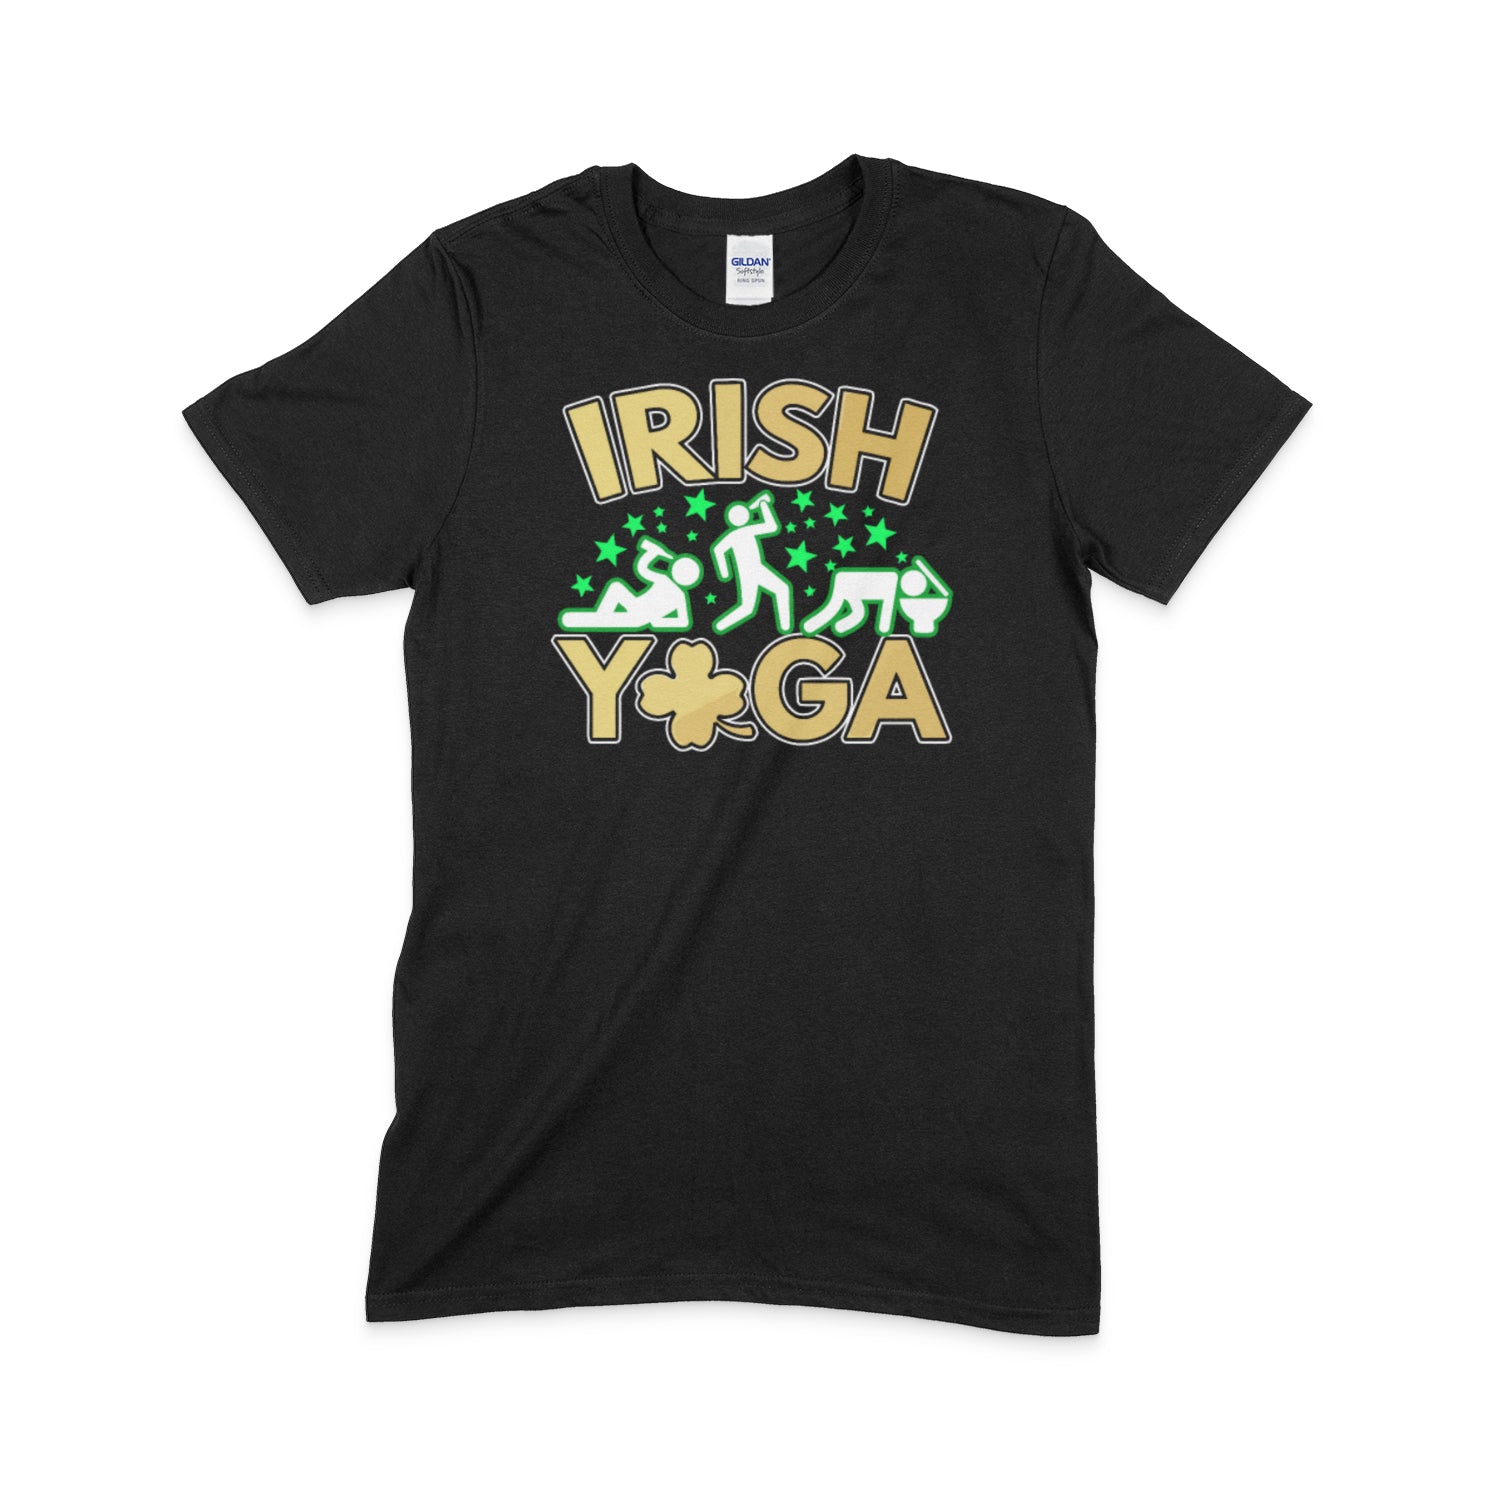  Premium Irish Yoga St. Patty's Day Drunk Shirt